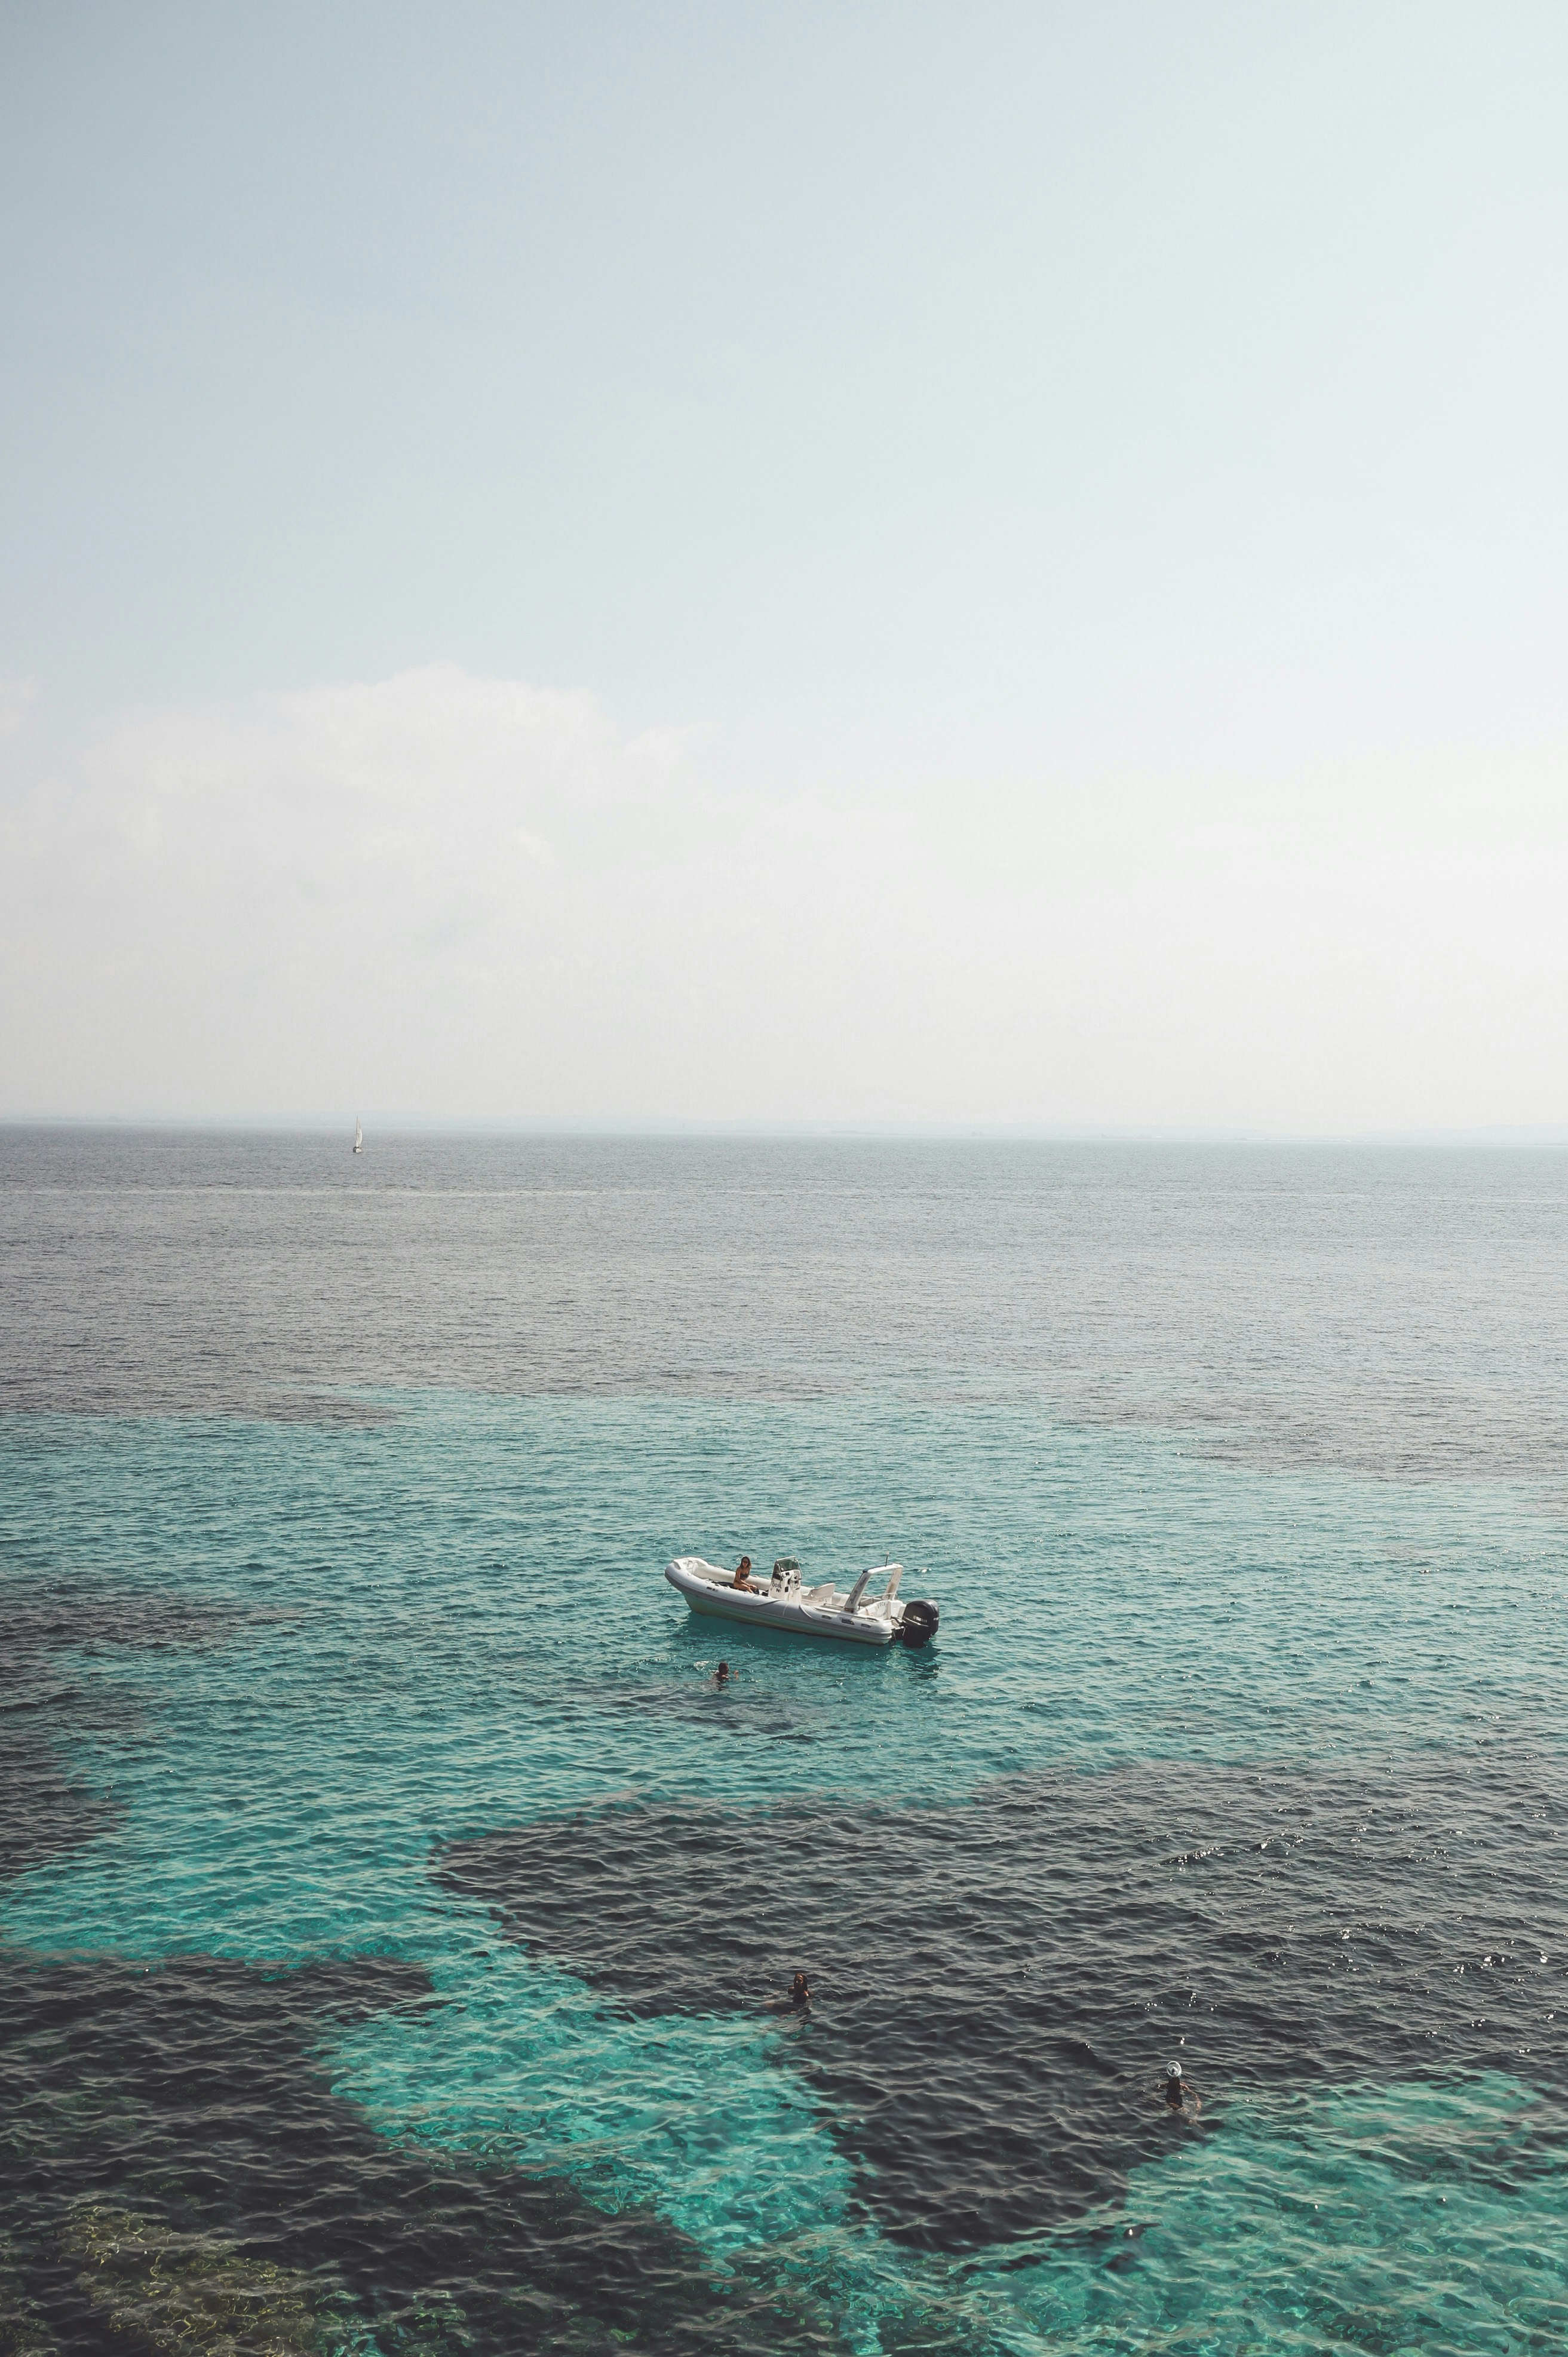 una piccola imbarcazione sull'acqua cristallina a favignana, una delle isole del mediterraneo da vedere